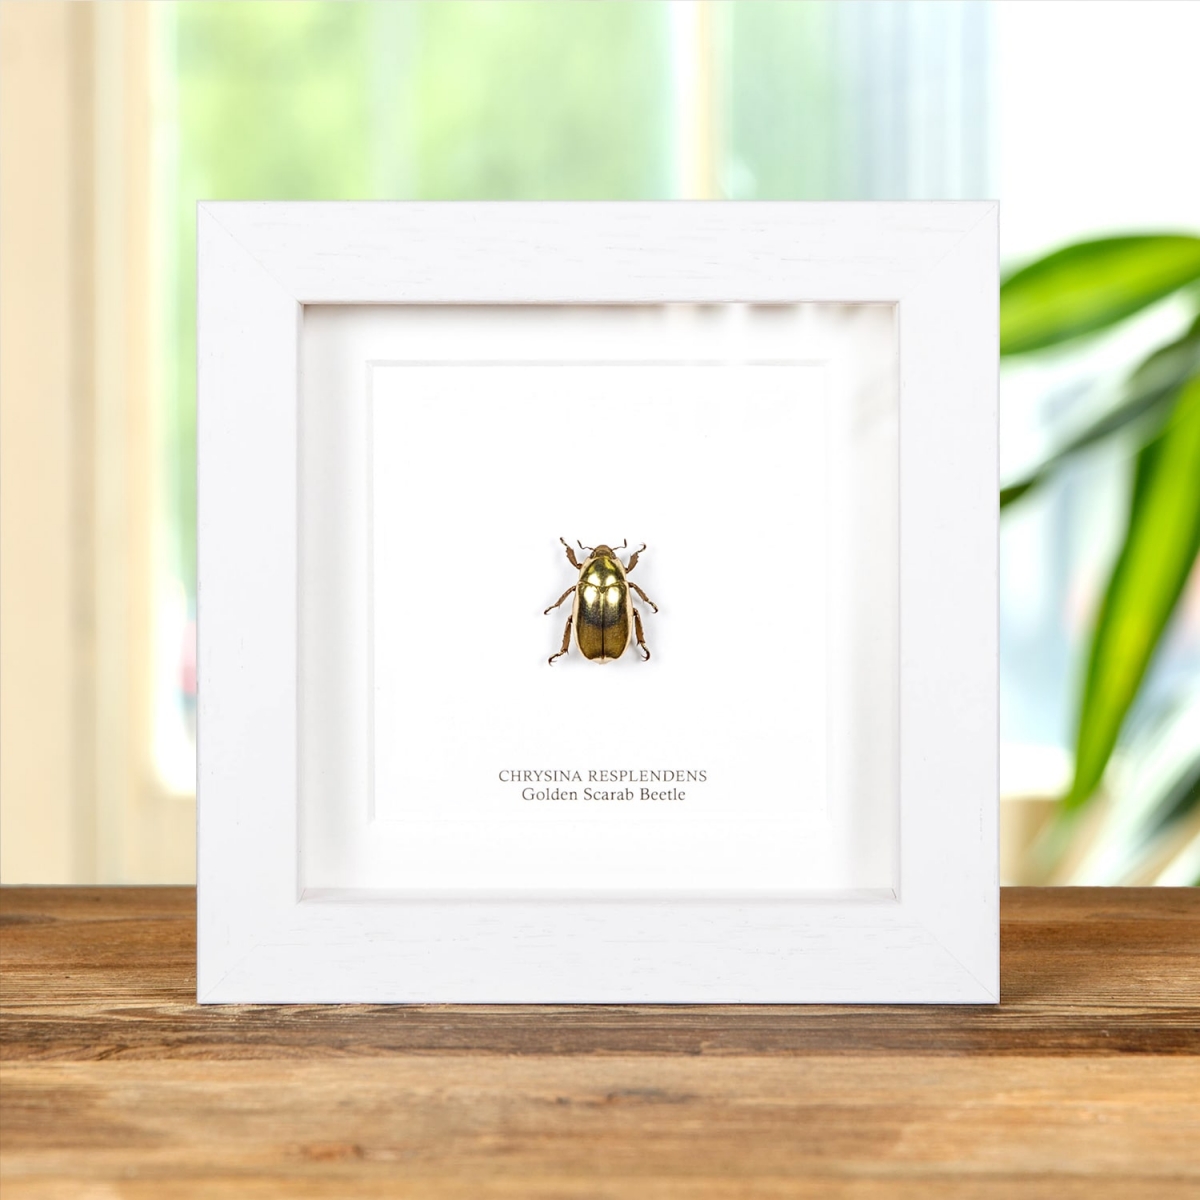 Golden Scarab Beetle in Box Frame (Chrysina resplendens)